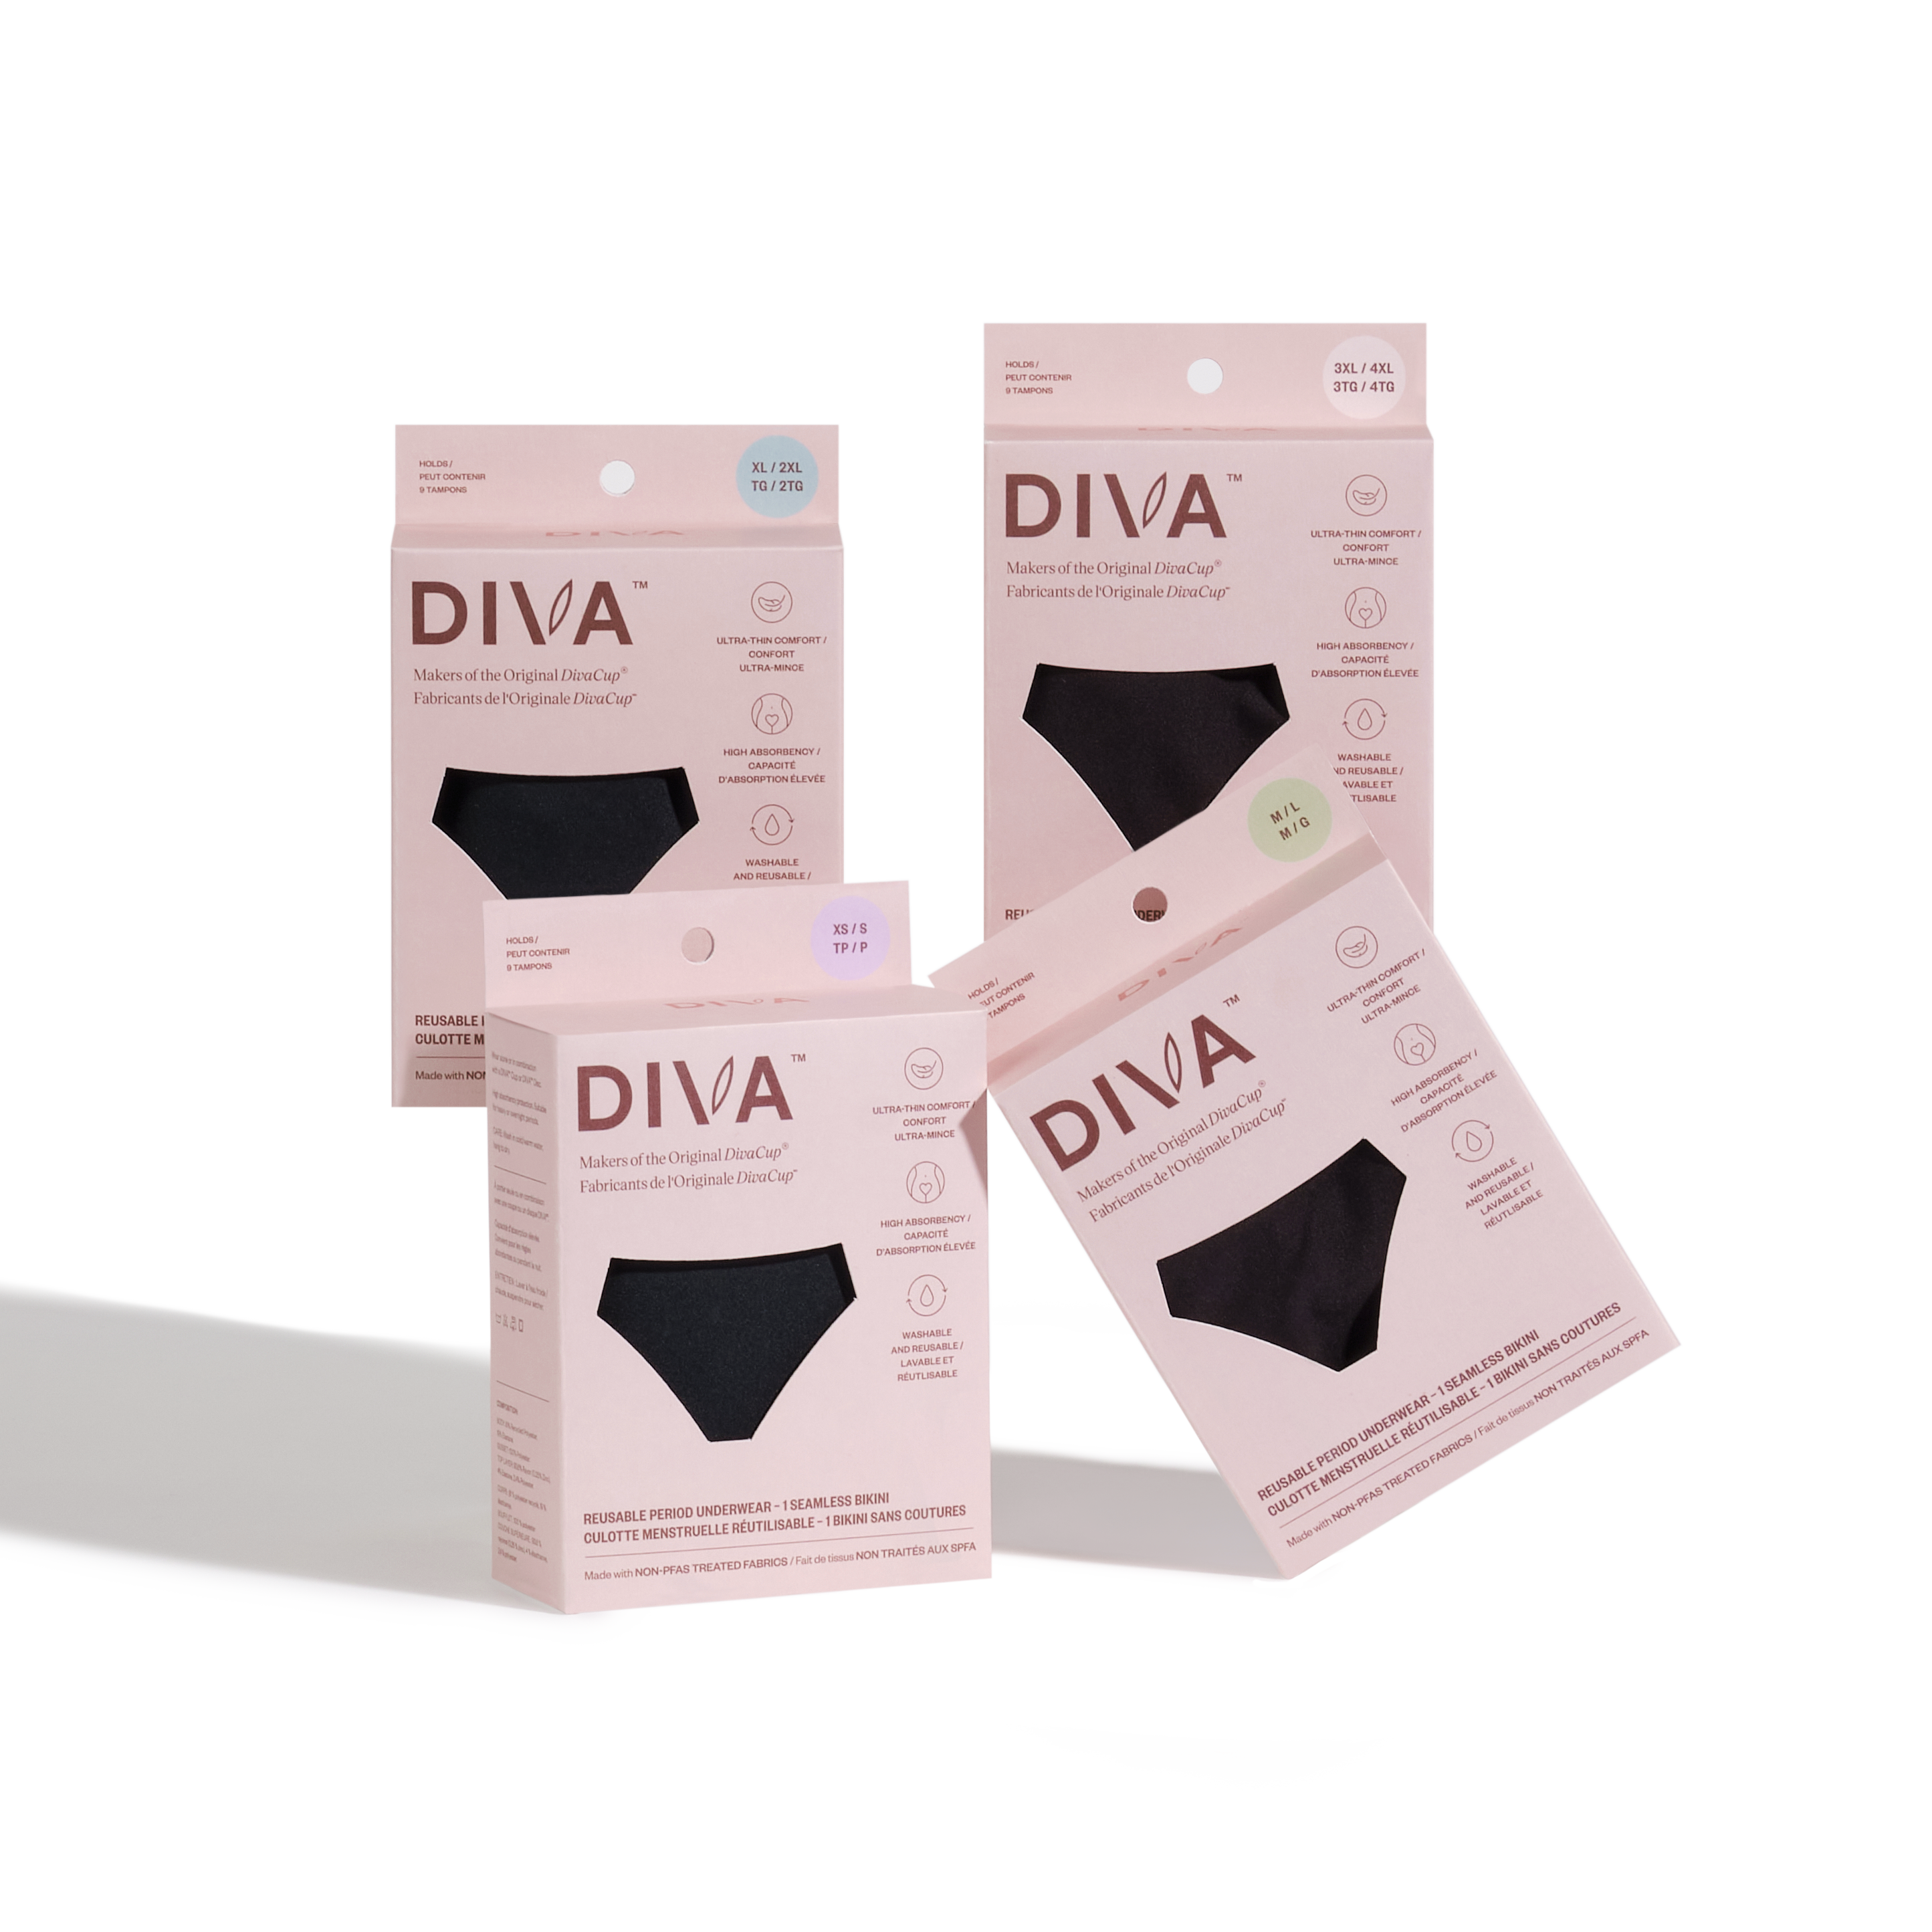 DIVA™ 4 Period Underwear Pack